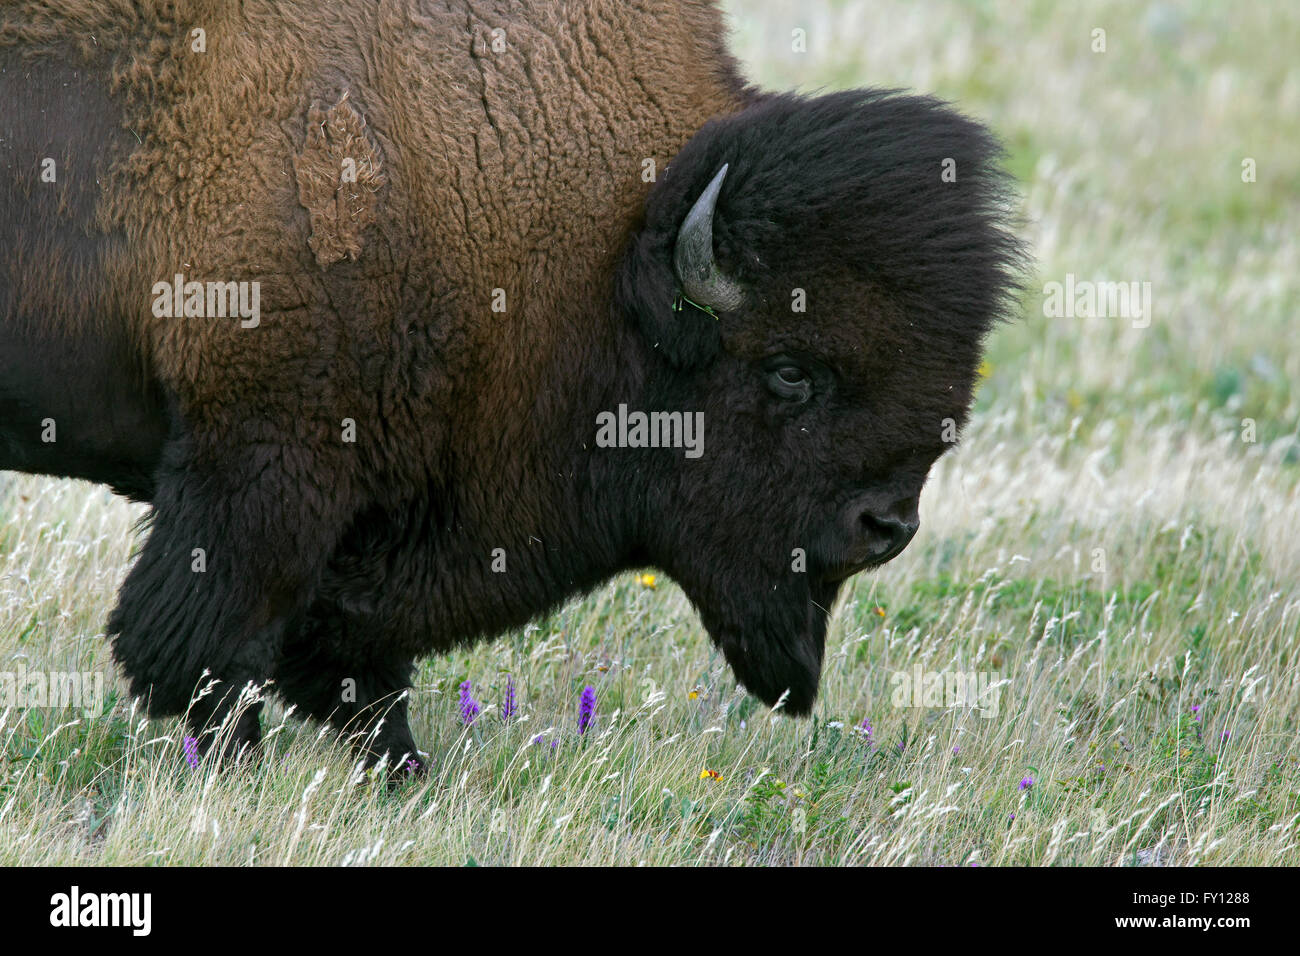 Bisontes americanos / American Buffalo (Bison bison) close up retrato de Bull en verano cubra Foto de stock